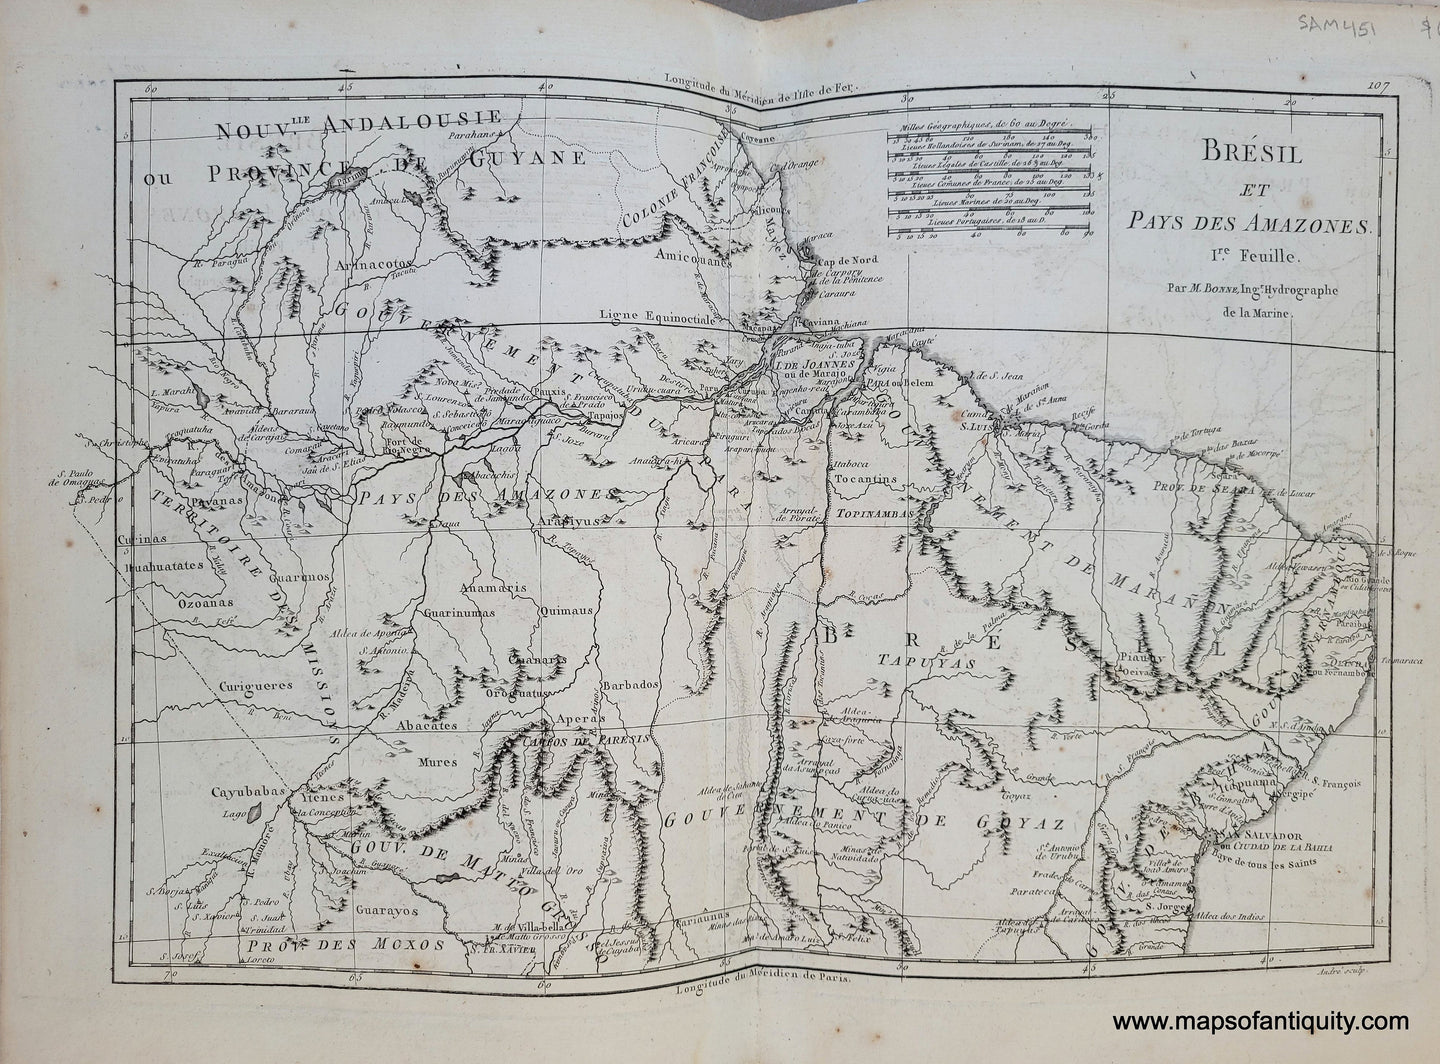 Genuine-Antique-Map-Brazil---Bresil-et-Pays-des-Amazones-1st-sheet-1788-Bonne-Desmarest-Maps-Of-Antiquity